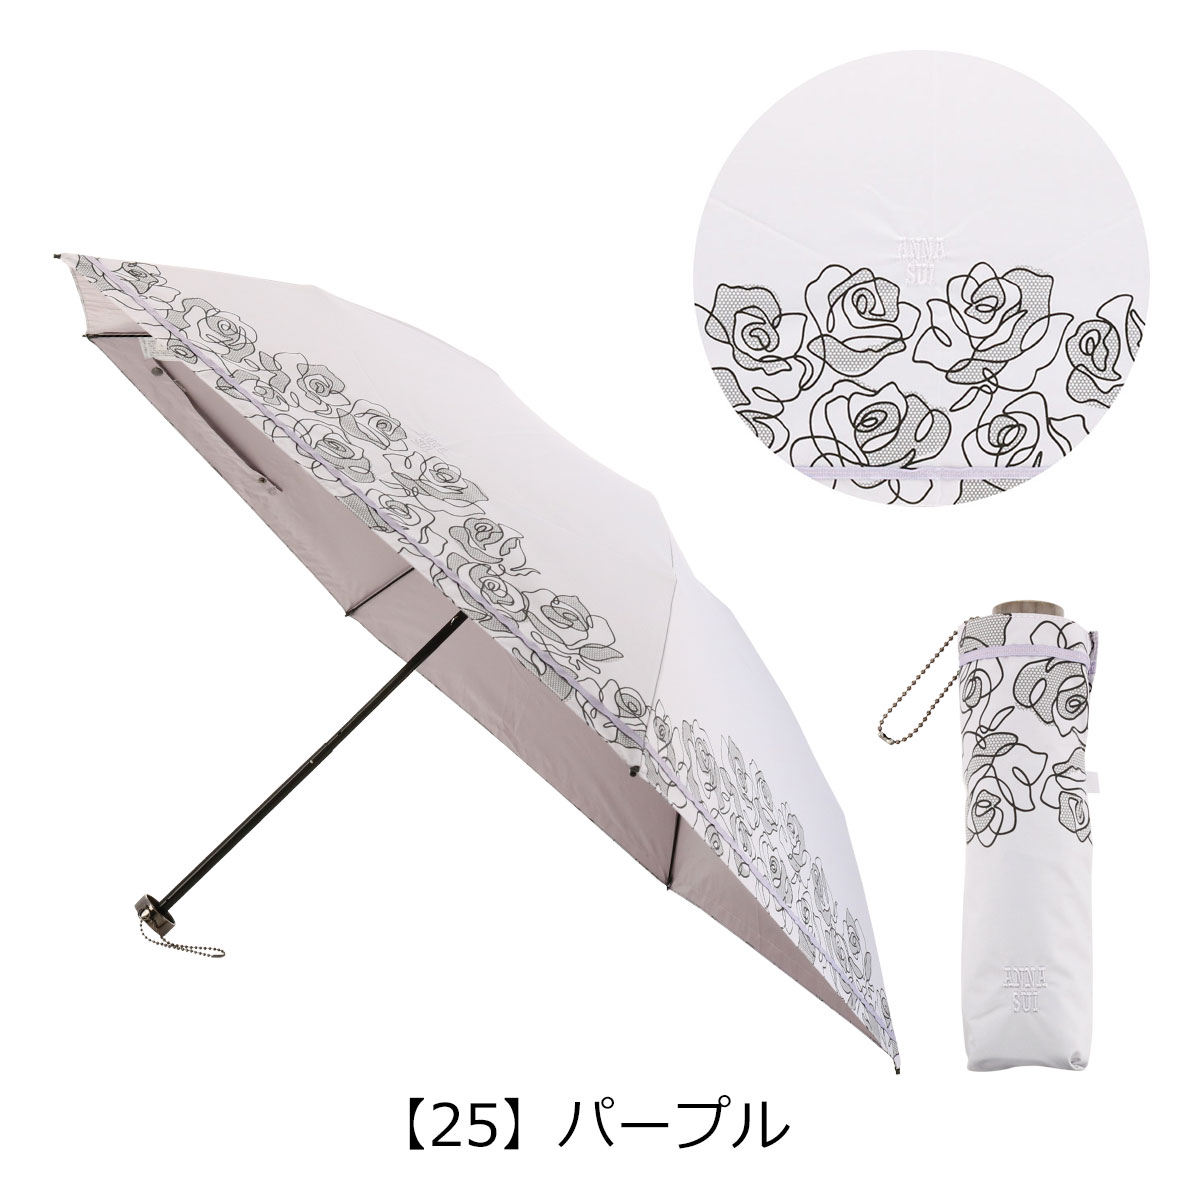 アナスイ 折りたたみ傘 雨傘 日傘 線描きタッチローズ柄 1AS27019 